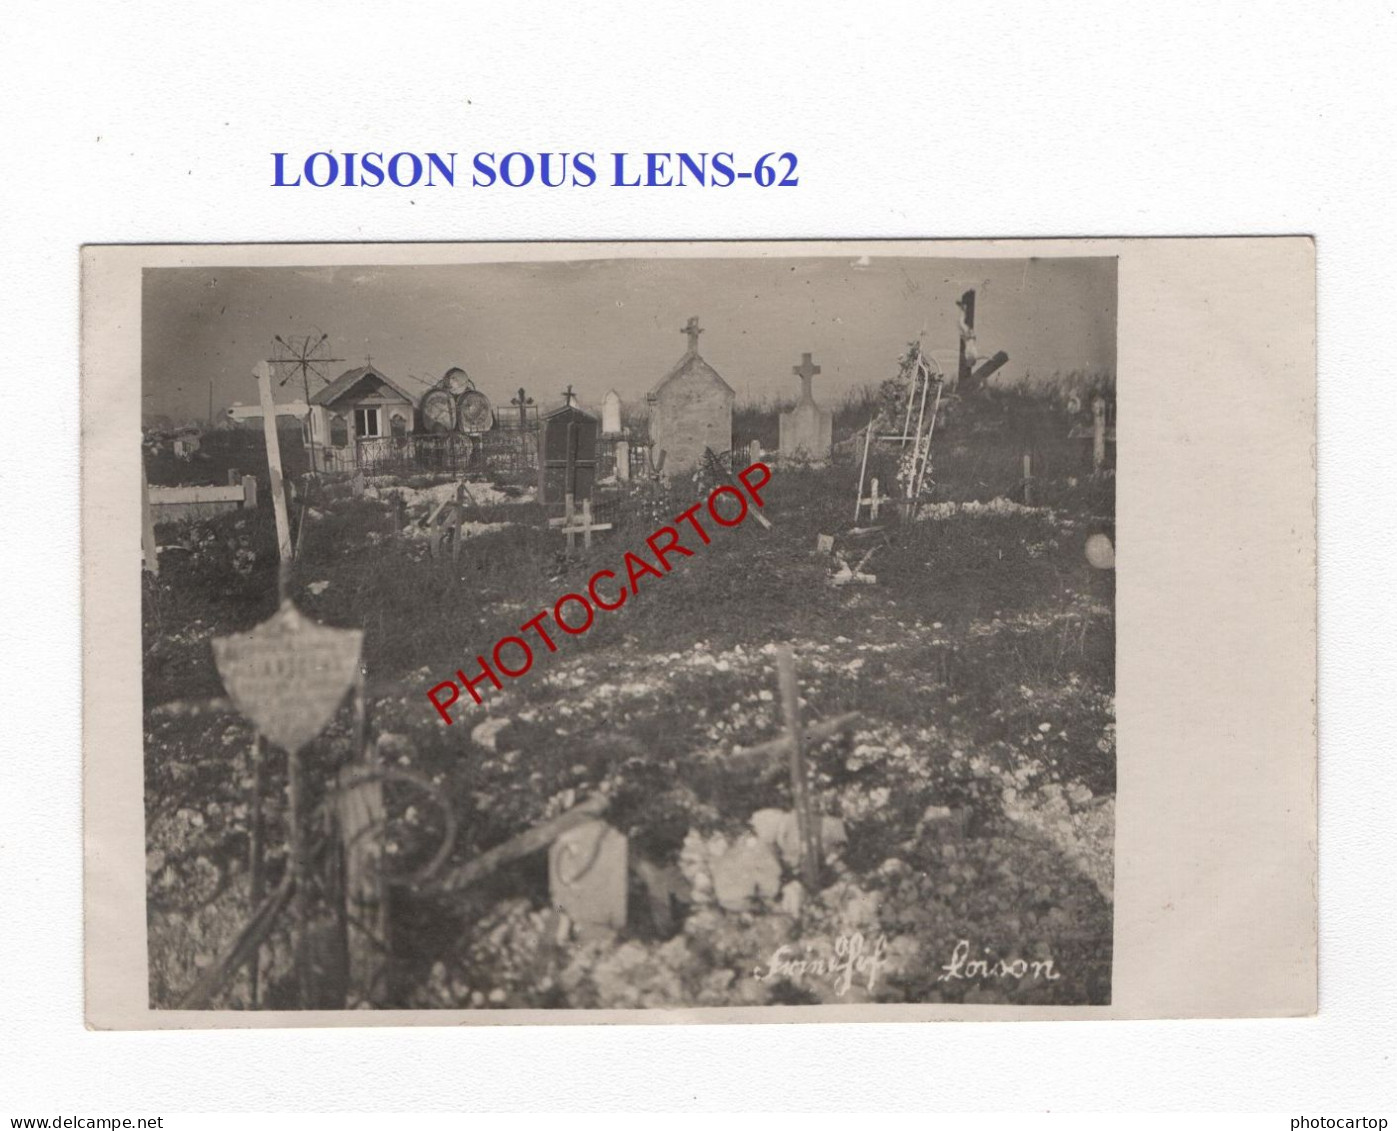 LOISON SOUS LENS-62-Cimetiere-Tombes-CARTE PHOTO Allemande-GUERRE 14-18-1 WK-MILITARIA- - War Cemeteries